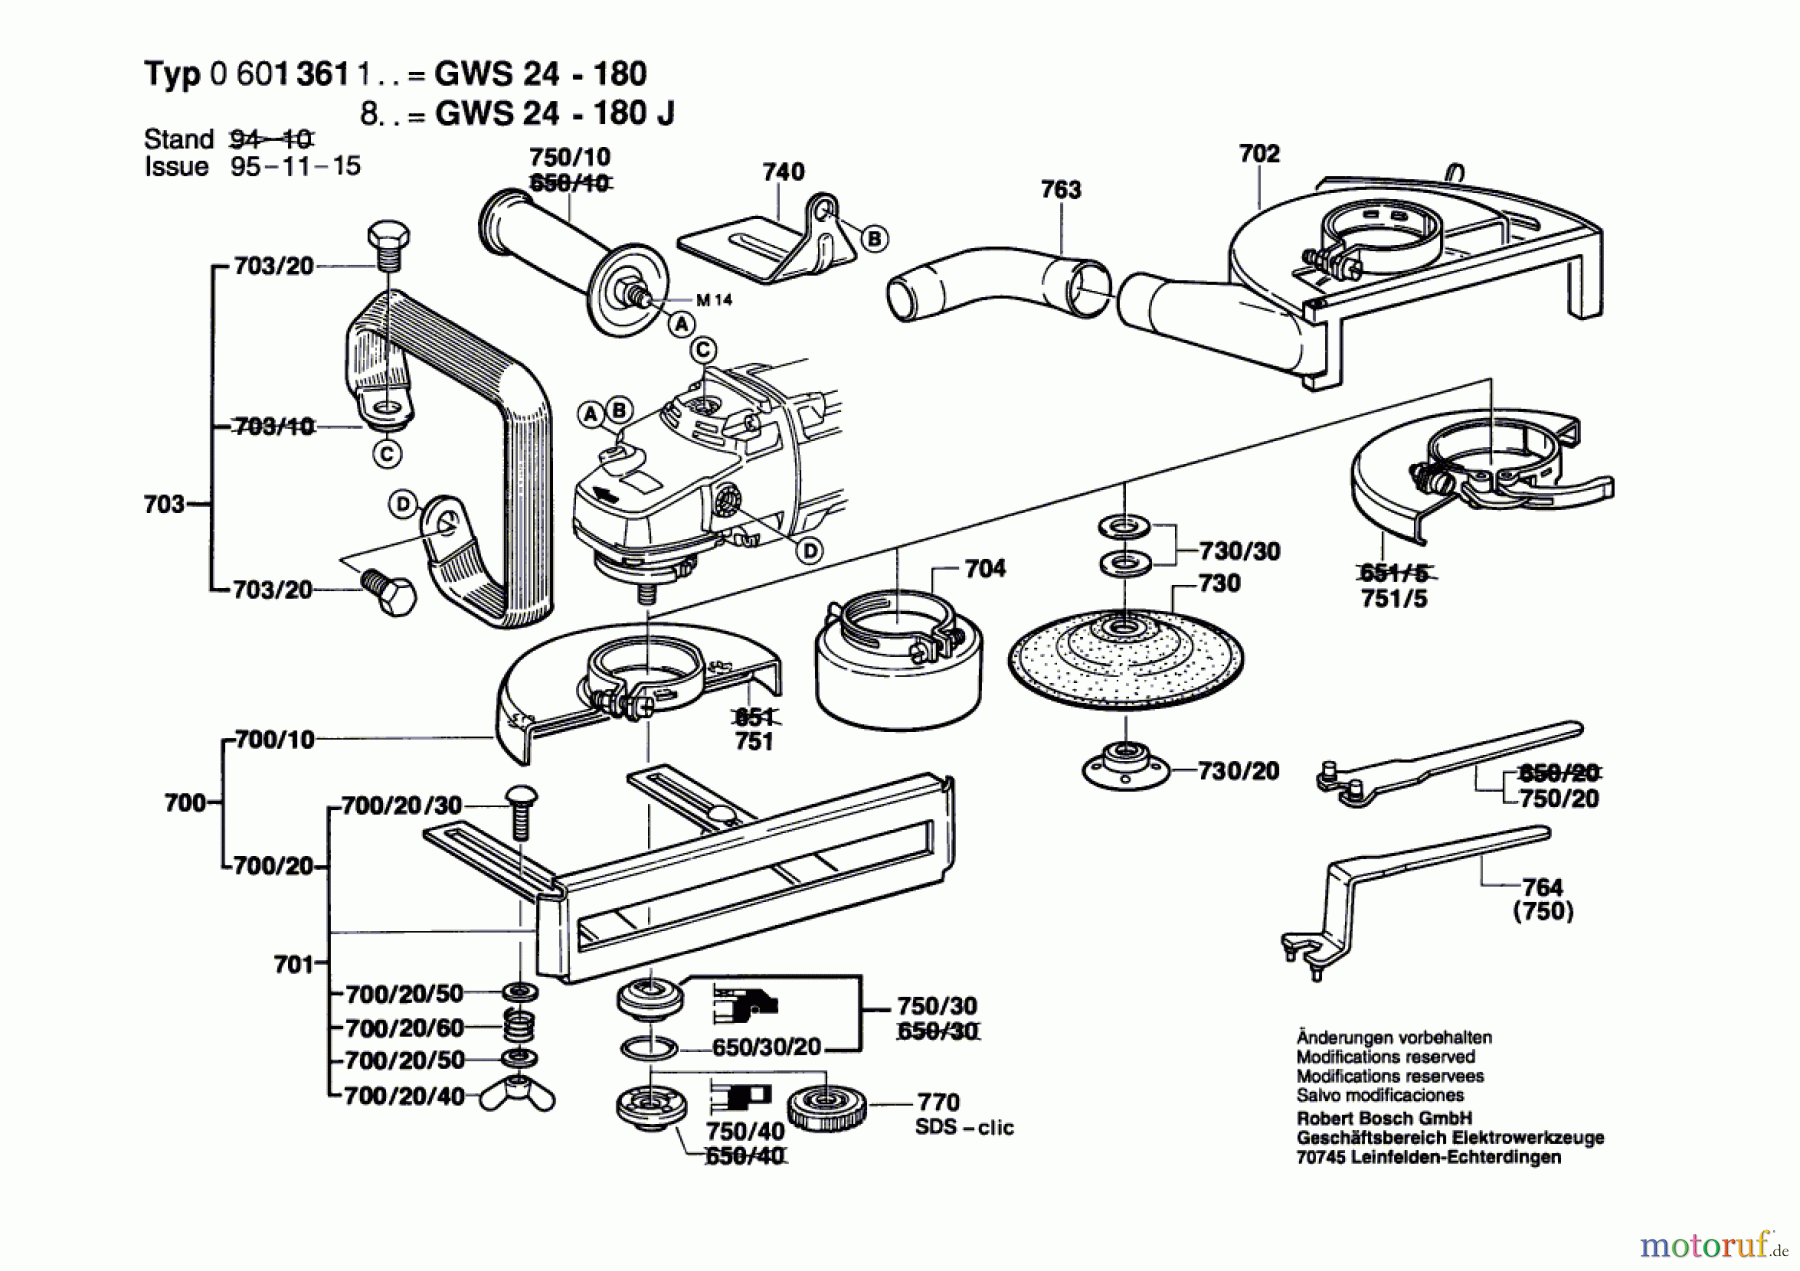  Bosch Werkzeug Winkelschleifer GWS 24-180 Seite 2